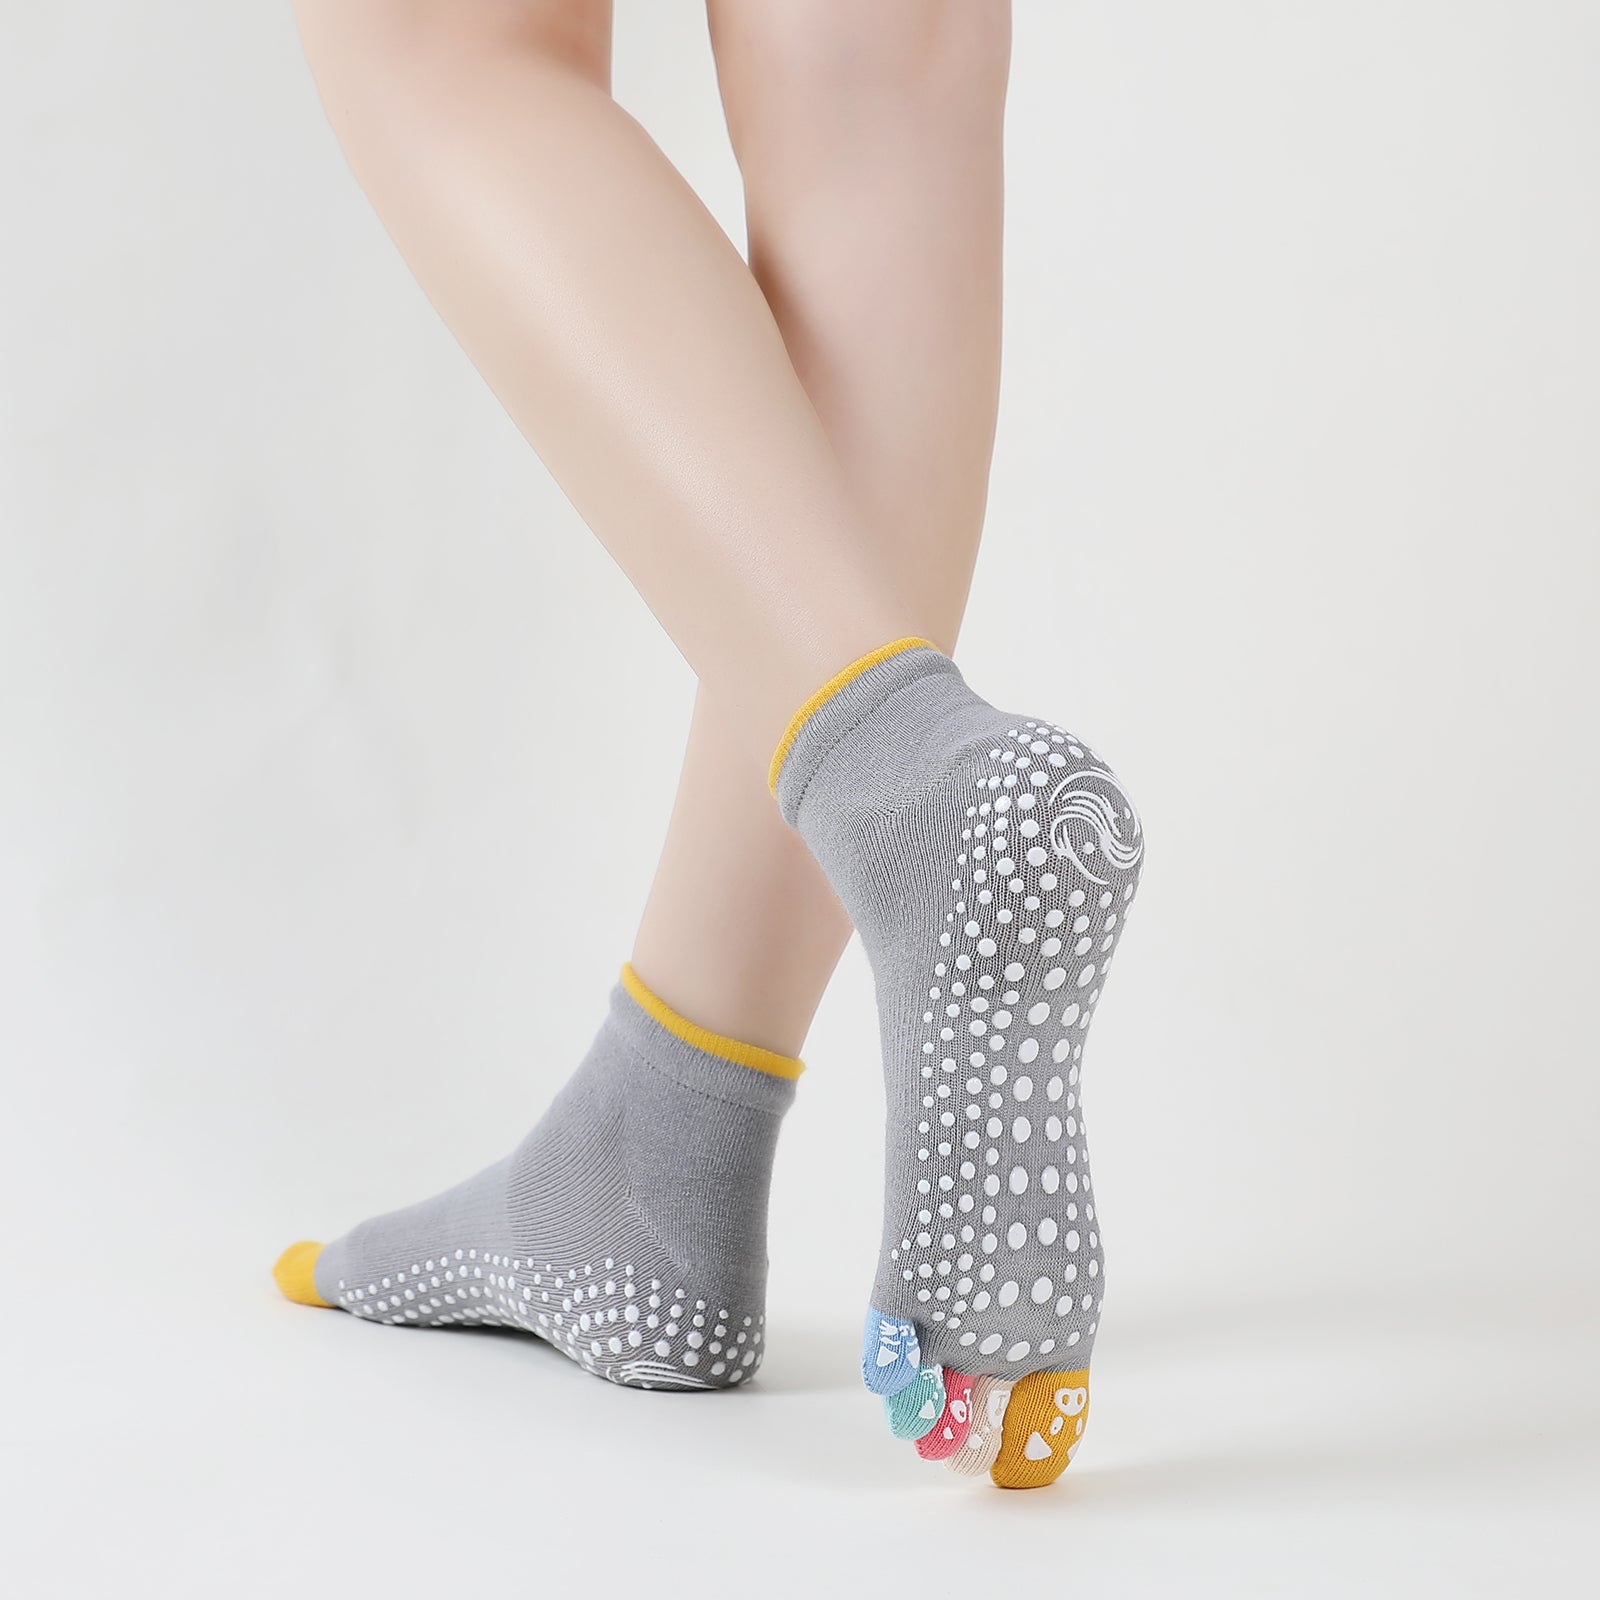 Artfasion 3 Pairs Pilates Socks with Grips for Women, Yoga Socks Non Slip Toe  Socks for Ballet Barre Home Hospital at  Women's Clothing store